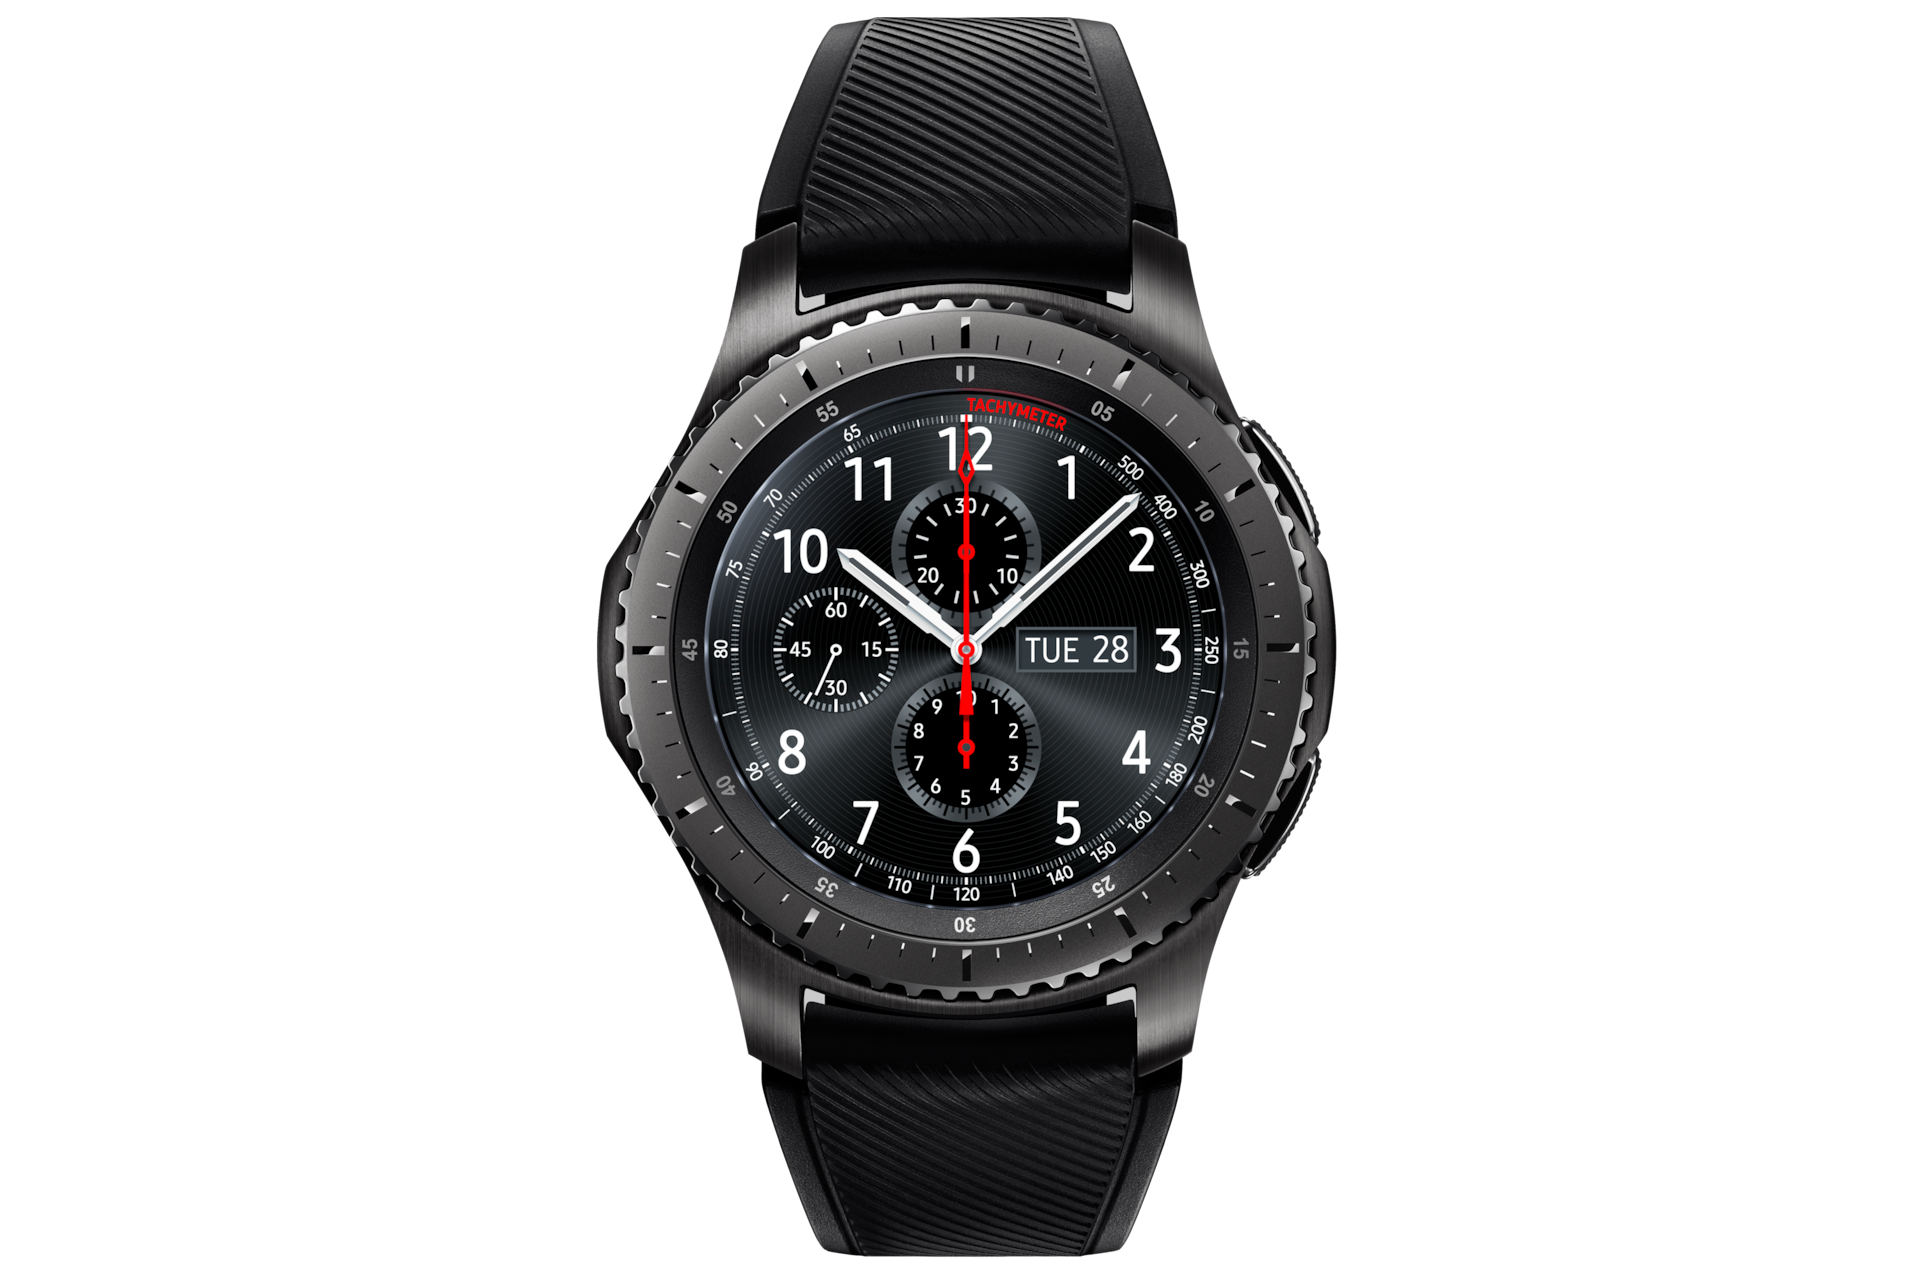 GALAXY GEAR S3  frontier smart watch